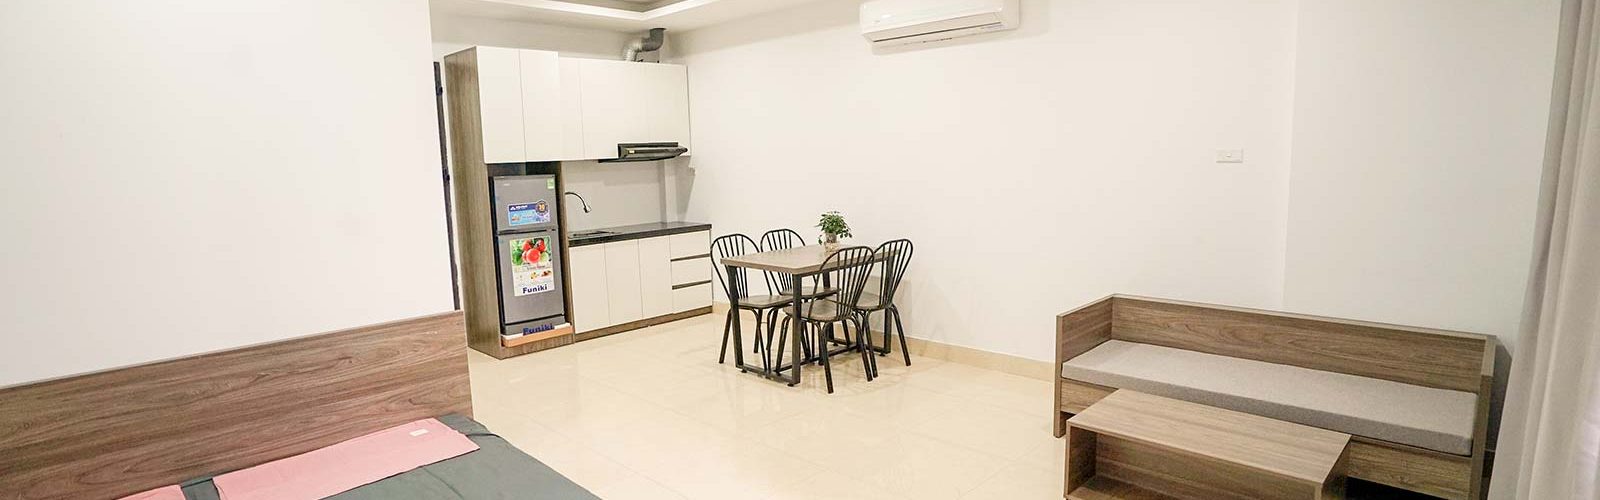 Liên hệ thuê chung cư Mini giá rẻ nhất tại số 20 Nguyễn Văn Huyên, Cầu Giấy